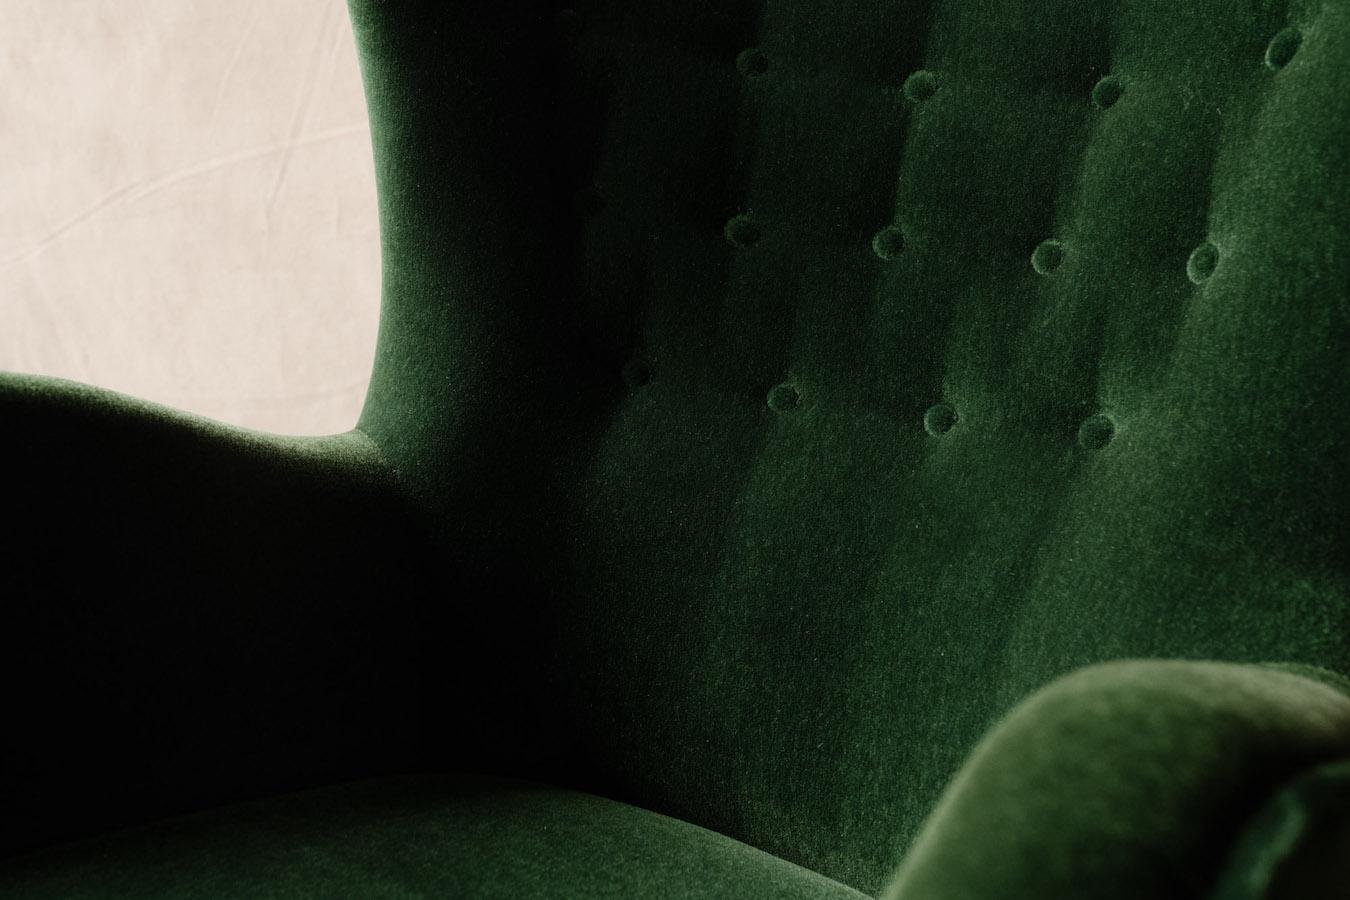 Vintage Mogens Lassen Lounge Stuhl aus Dänemark, CIRCA 1950. Sehr bequemes Modell, gepolstert mit grünem Mohair-Samt. Ausgezeichneter Zustand.

Wir haben nicht die Zeit, zu jedem unserer Stücke eine ausführliche Beschreibung zu schreiben. Wir ziehen